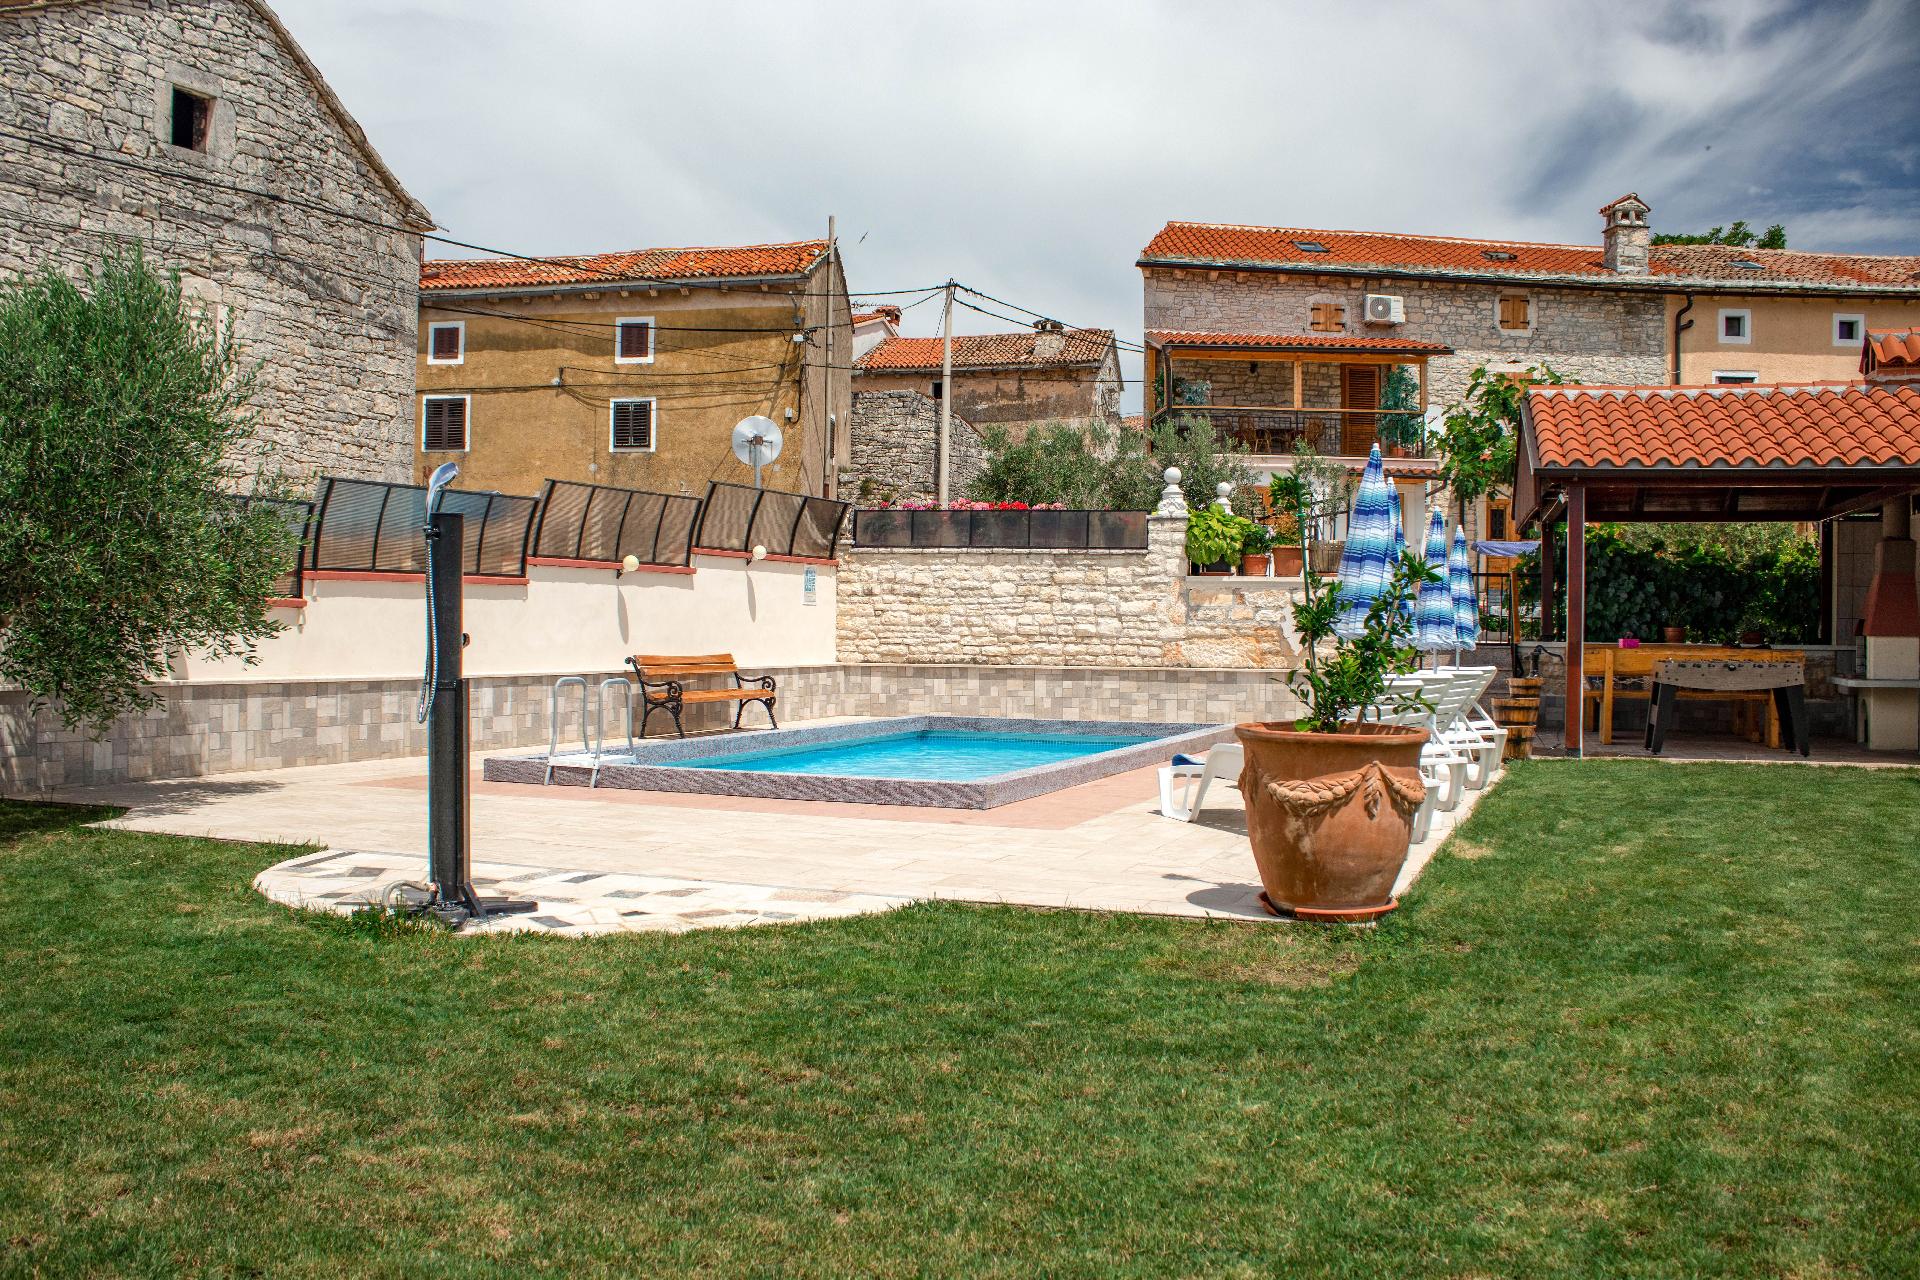 Ferienhaus mit Privatpool für 4 Personen ca.  Ferienhaus in Kroatien